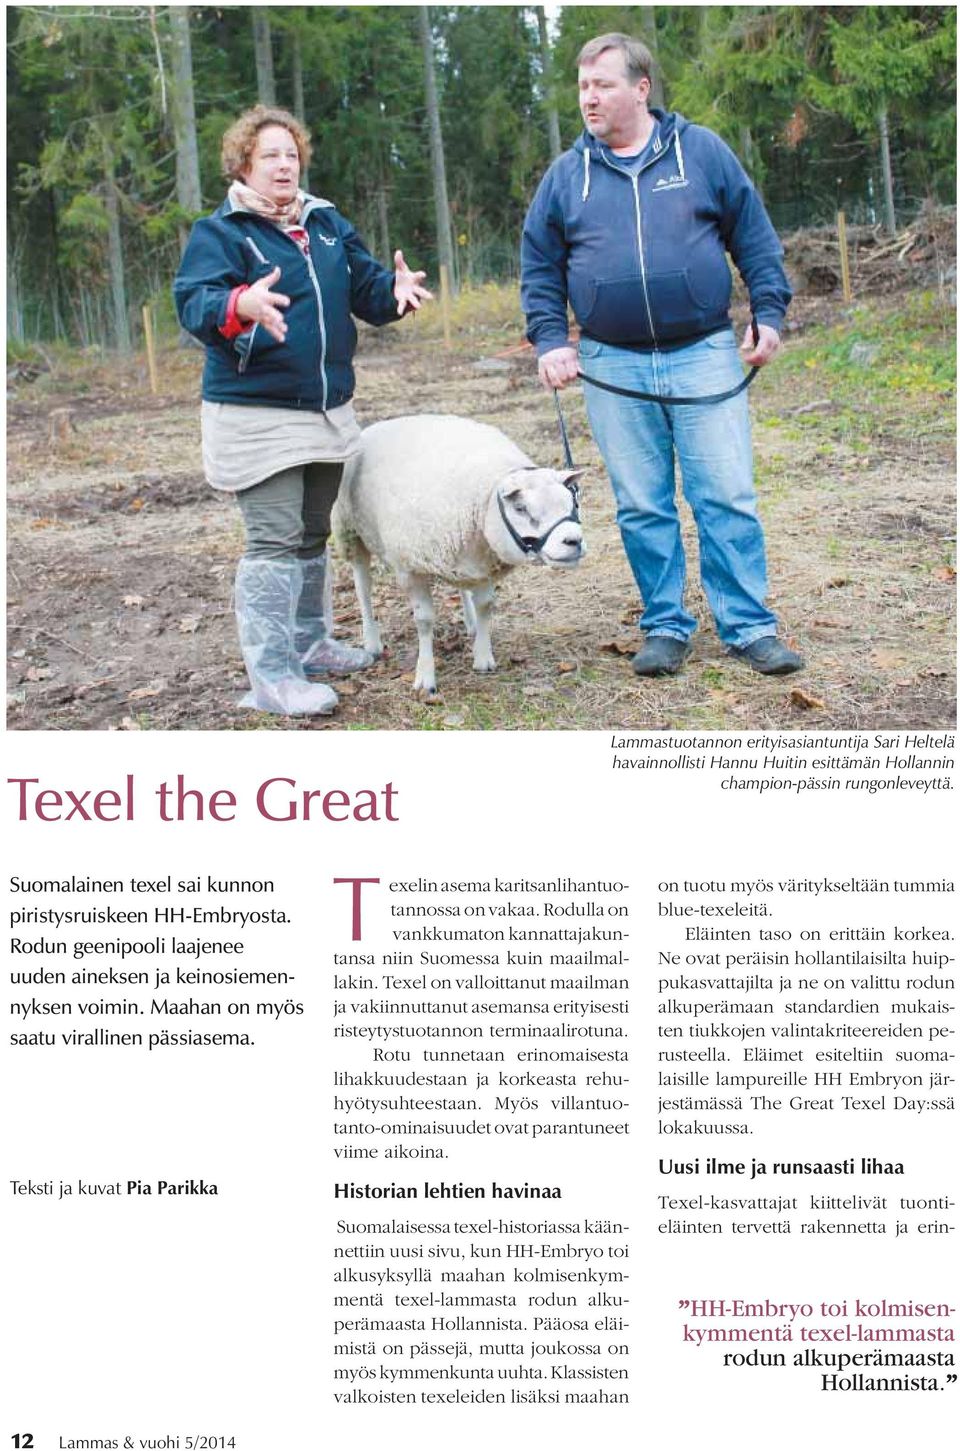 Teksti ja kuvat Pia Parikka Texelin asema karitsanlihantuotannossa on vakaa. Rodulla on vankkumaton kannattajakuntansa niin Suomessa kuin maailmallakin.